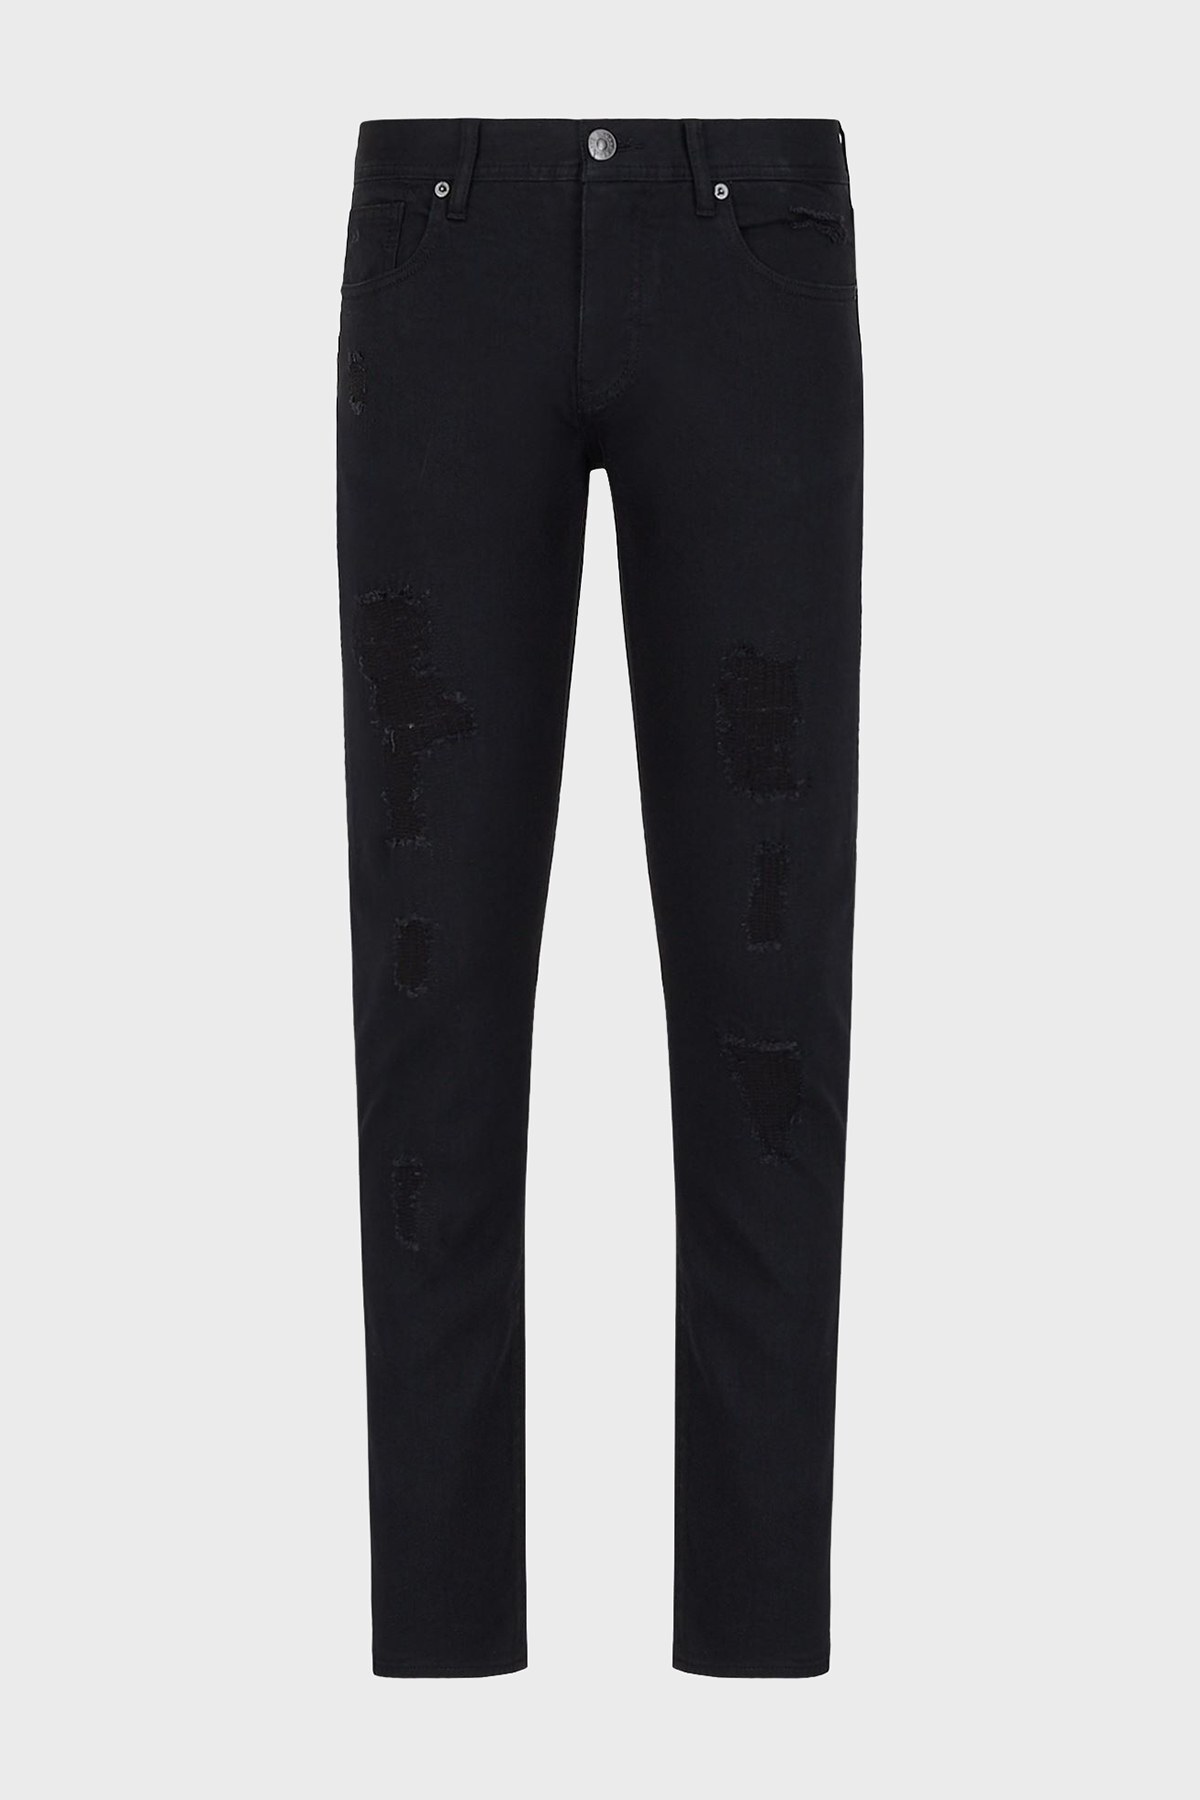 Armani Exchange J13 Pamuklu Normal Bel Slim Fit Jeans Erkek Kot Pantolon 3LZJ13 Z1AAZ 1200 SİYAH